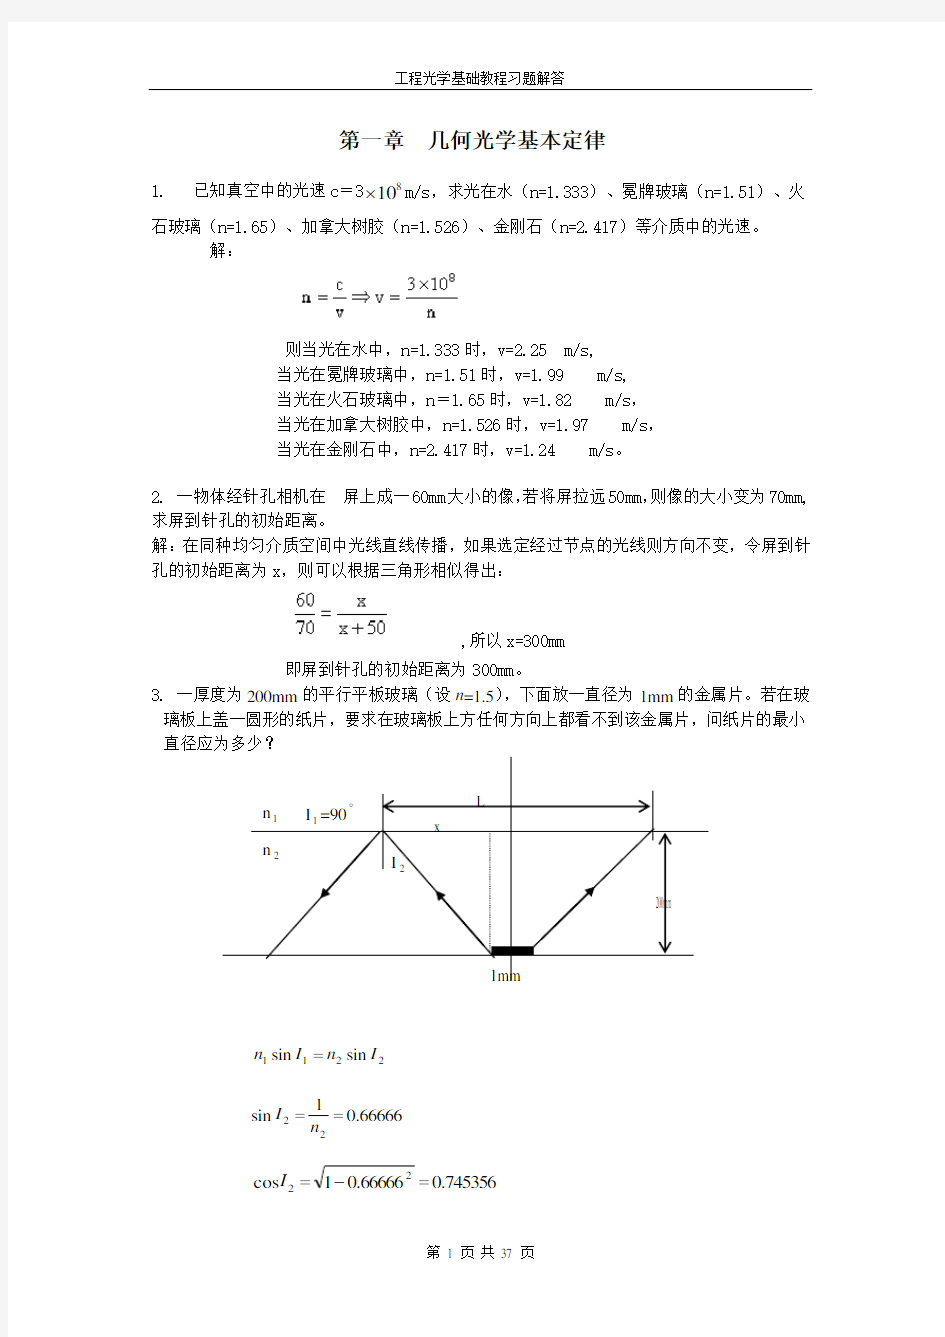 工程光学基础教程 习题答案(完整)